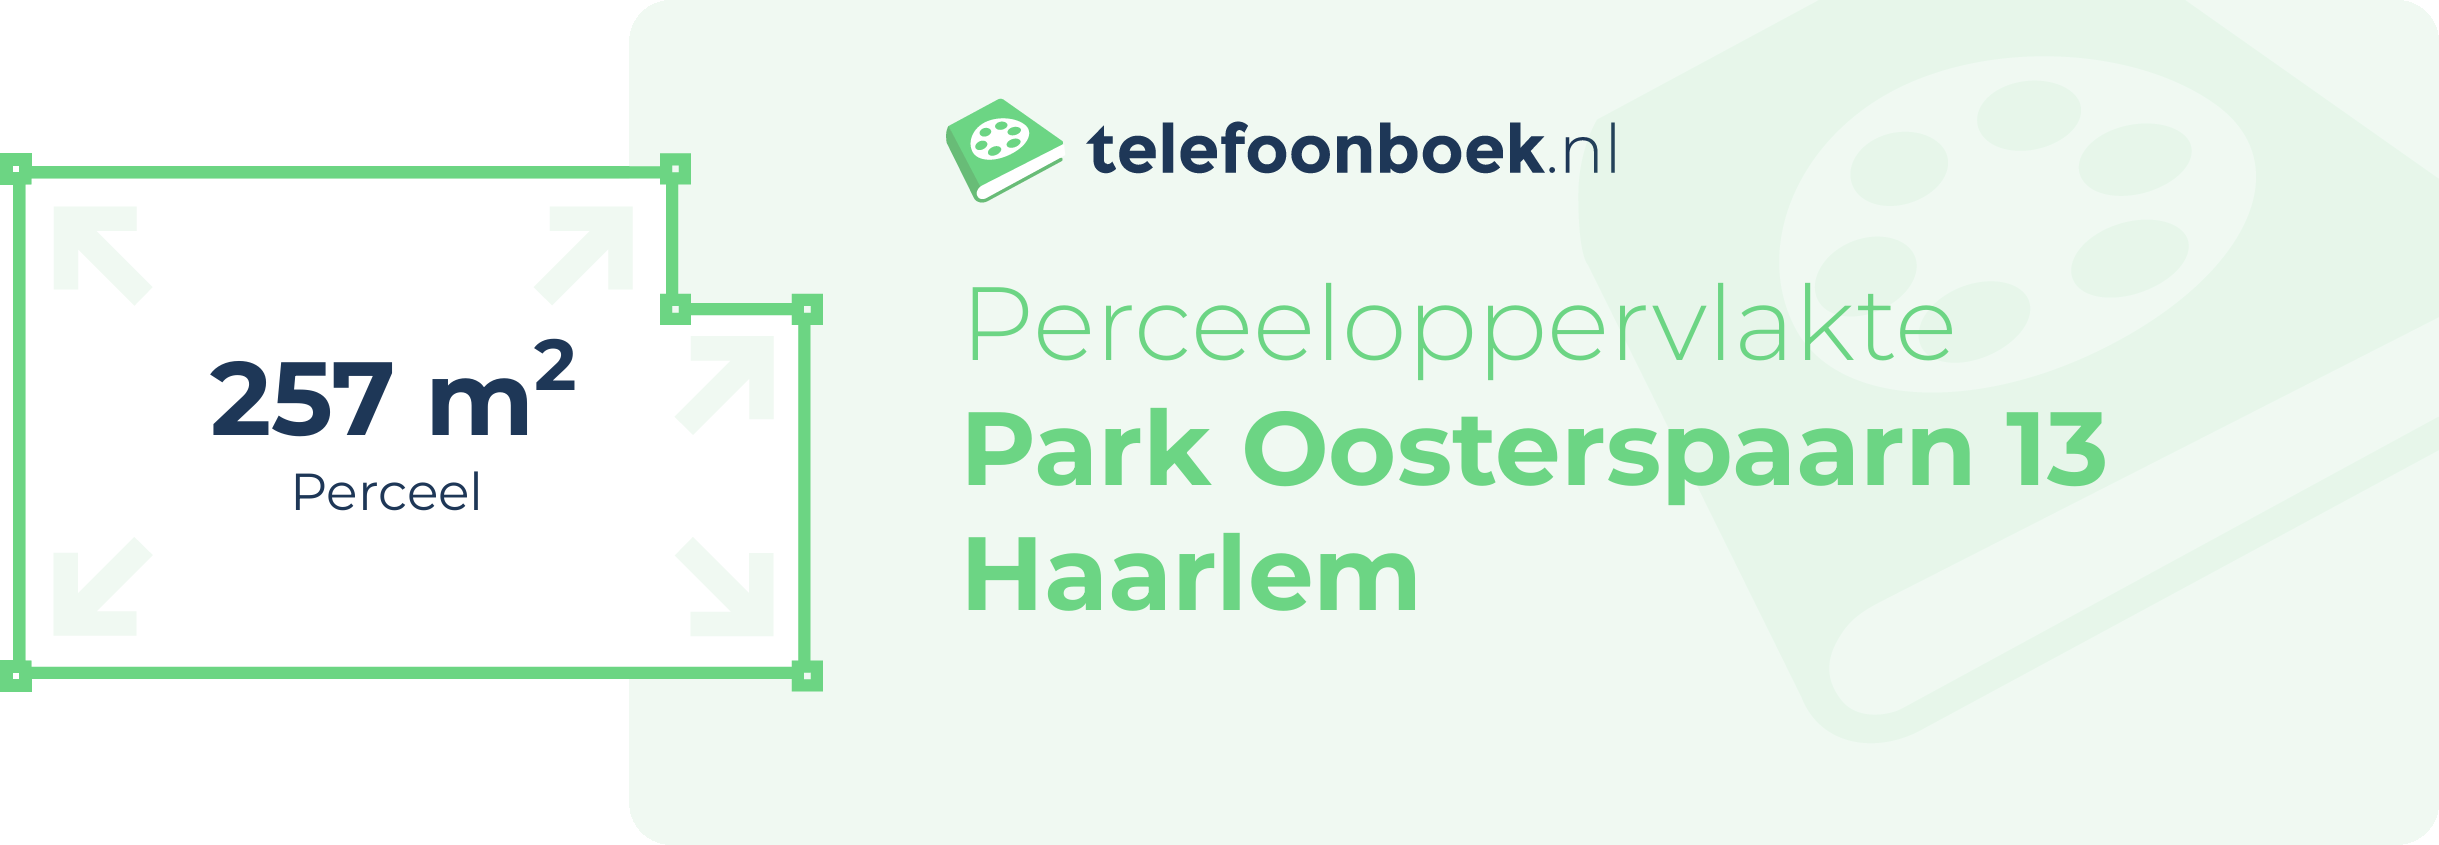 Perceeloppervlakte Park Oosterspaarn 13 Haarlem